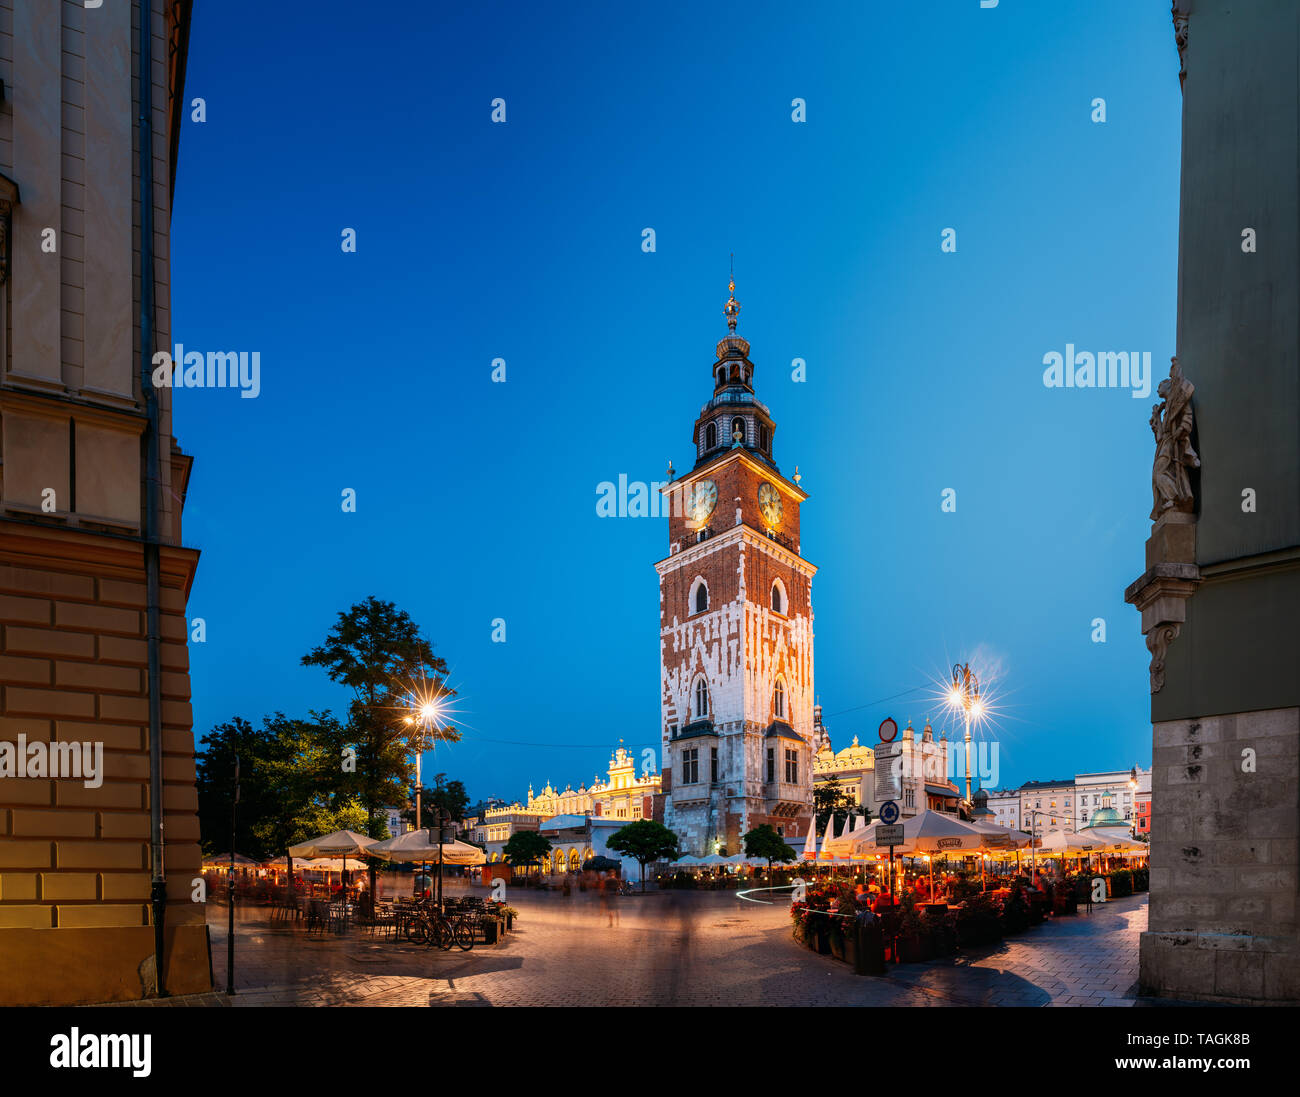 Krakau, Polen - 27. August 2018: Wahrzeichen am Altstädter Ring im Sommer Abend. Altes Rathaus turm In der Nacht Beleuchtung. UNESCO-Welterbe S Stockfoto